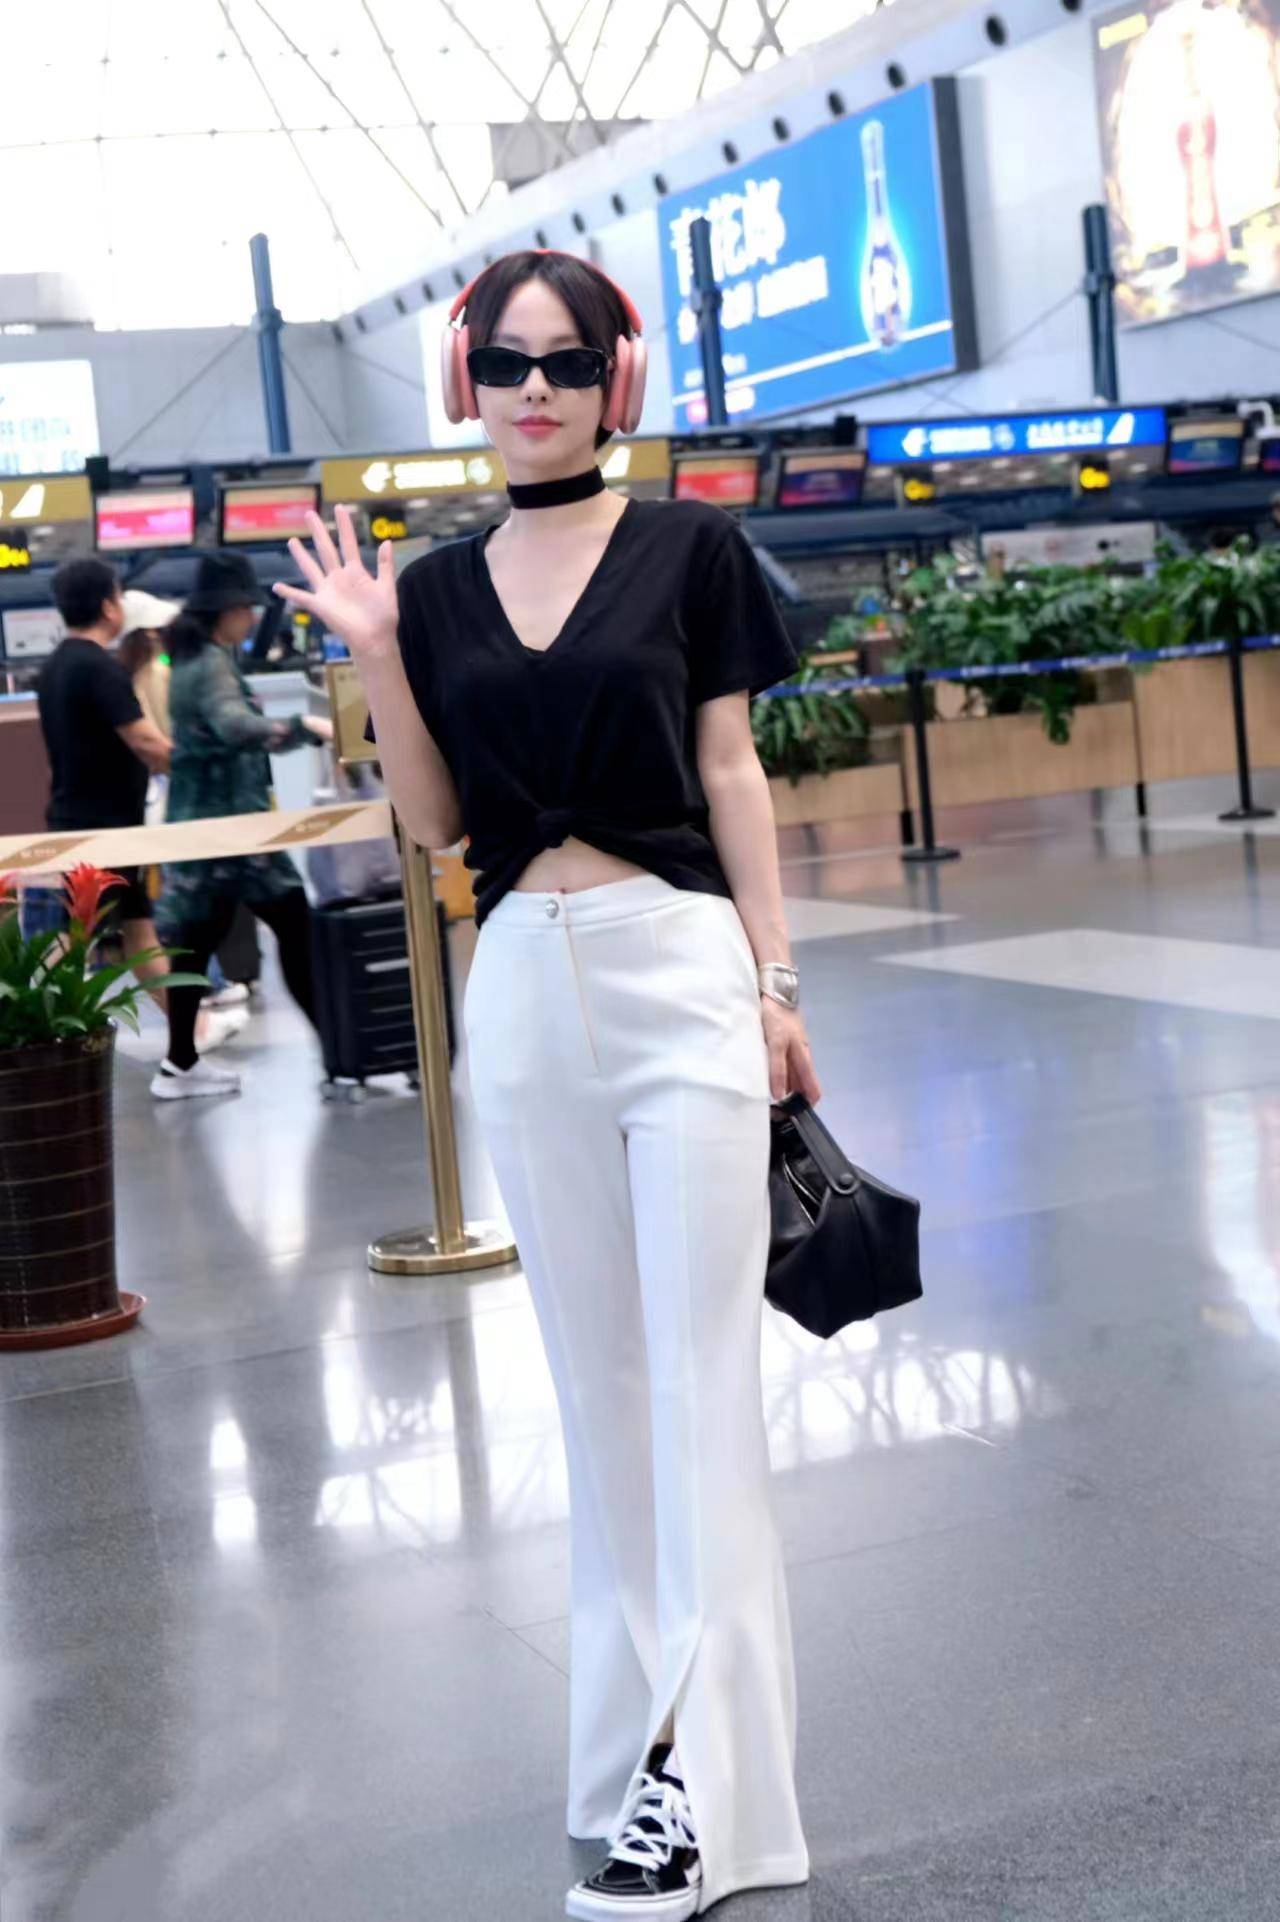 张嘉倪现身机场,身穿黑色裸上衣和白色裤子,简单,时尚,还显得更高!